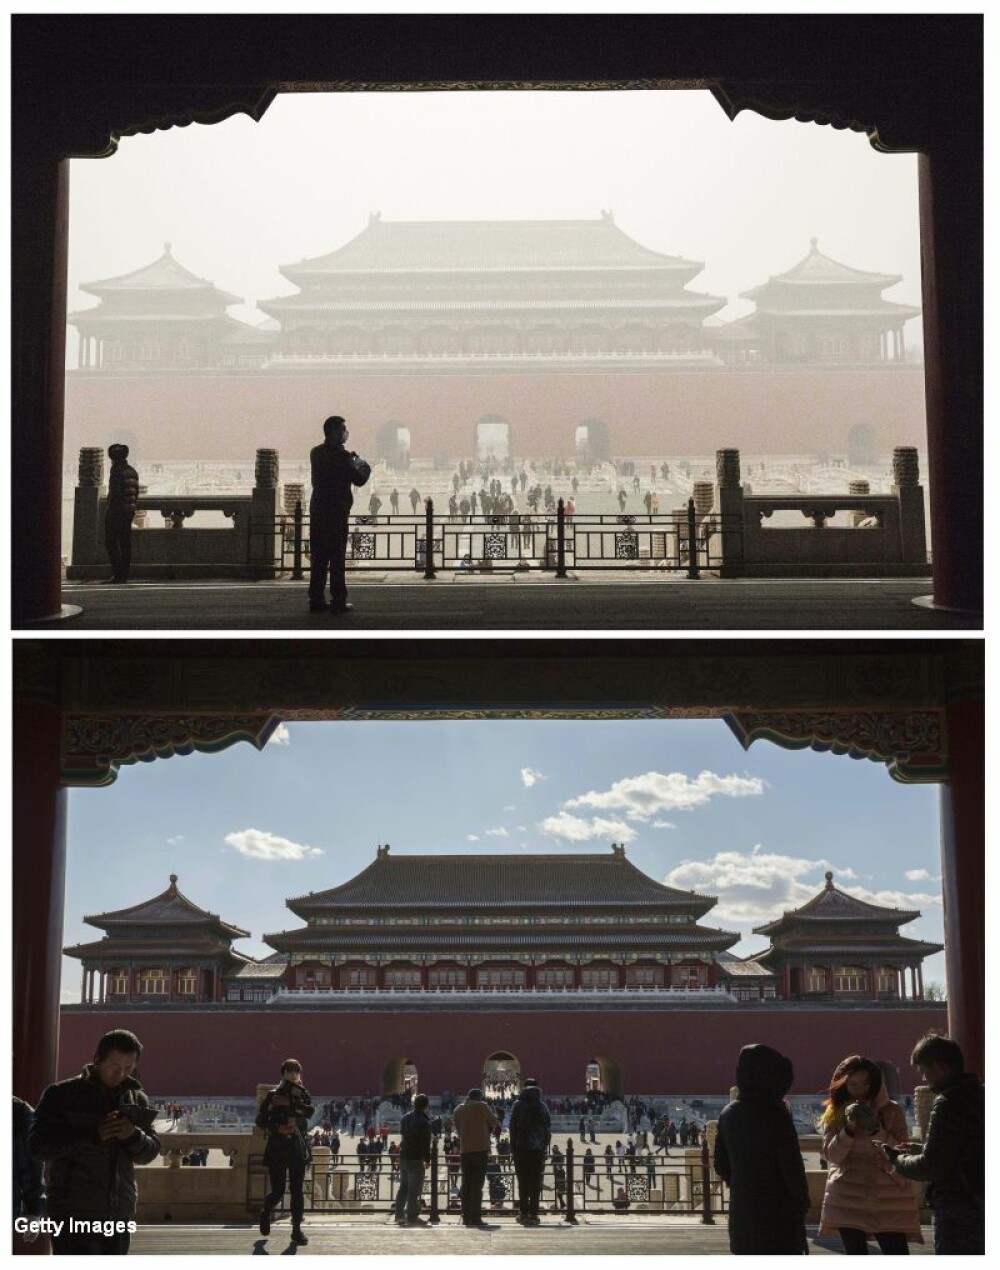 COD ROSU de alerta din cauza poluarii in China. Imagini 